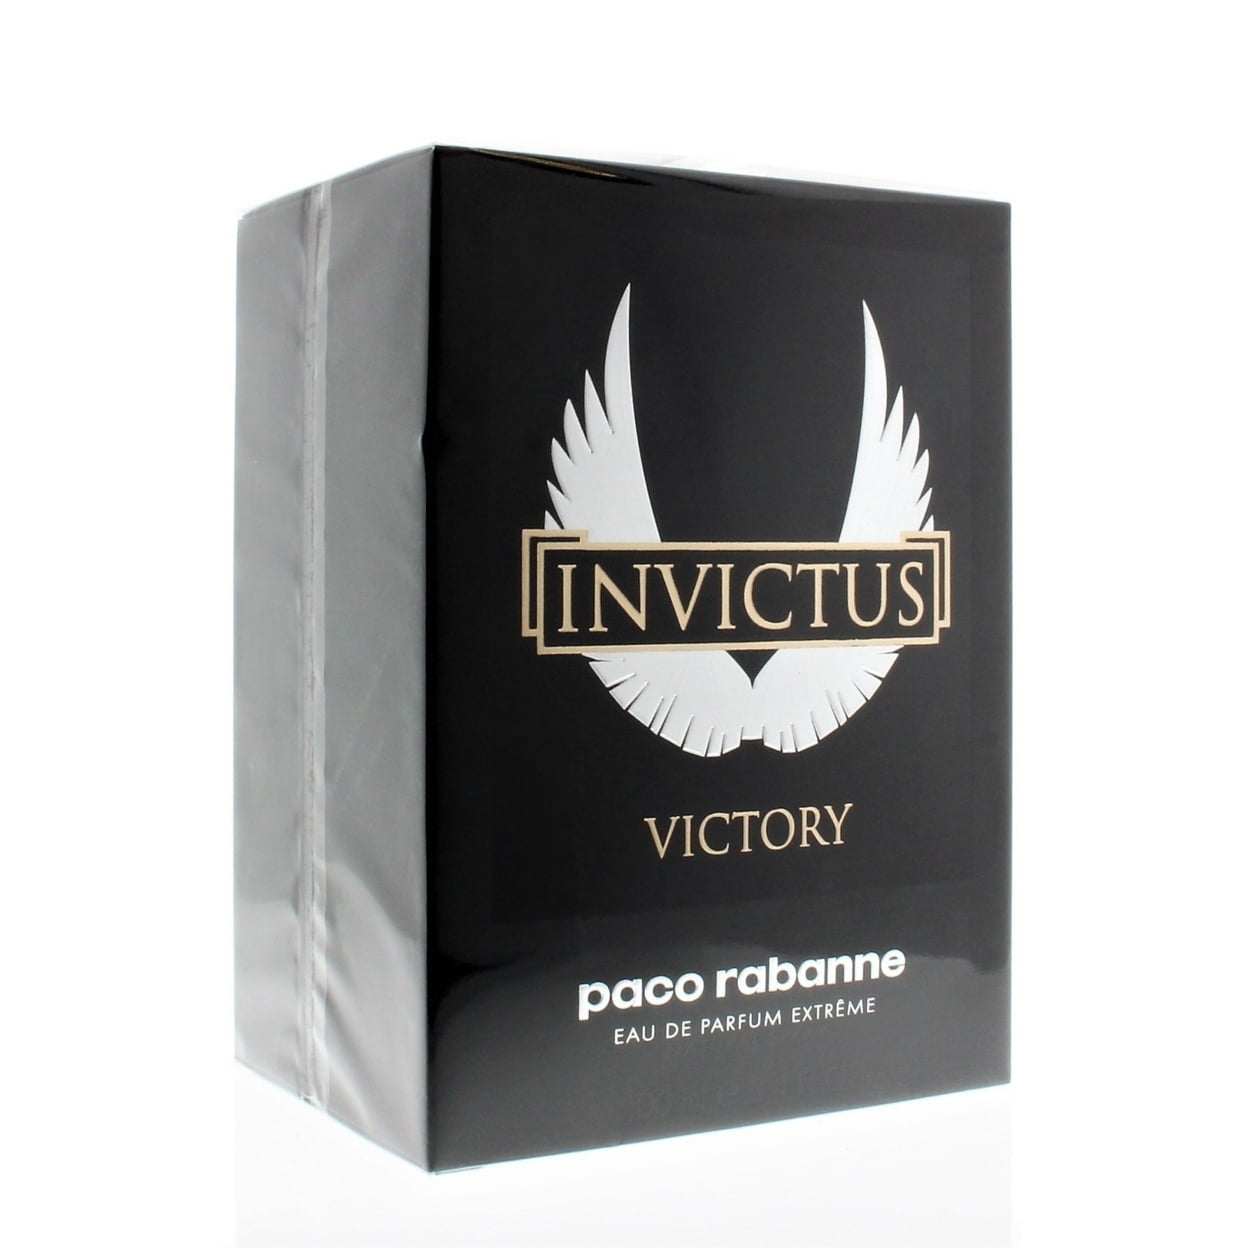  Paco Rabanne Invictus Victory for Men 3.4 oz Eau de Parfum  Extreme Spray : Beauty & Personal Care